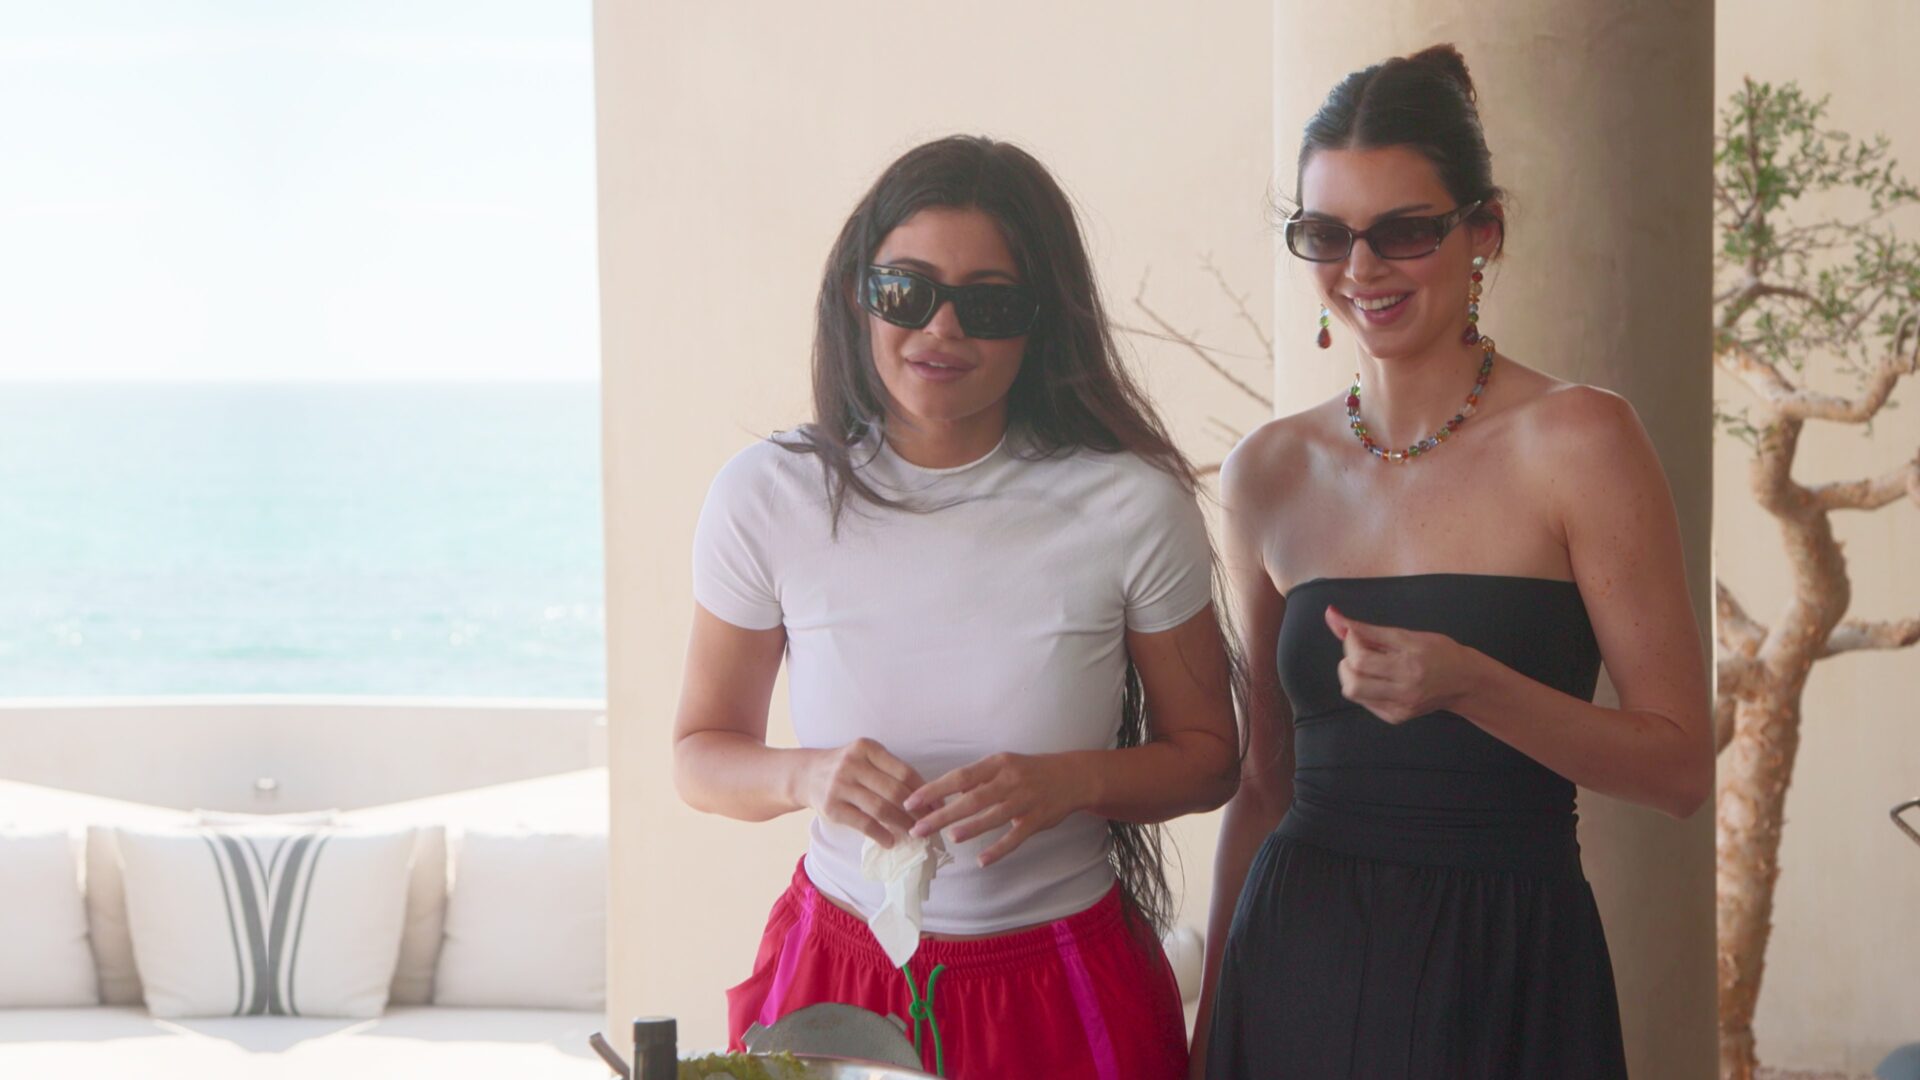 Kylie Jenner – The Kardashians | Season 4 Episode 1 | Kylie Jenner style